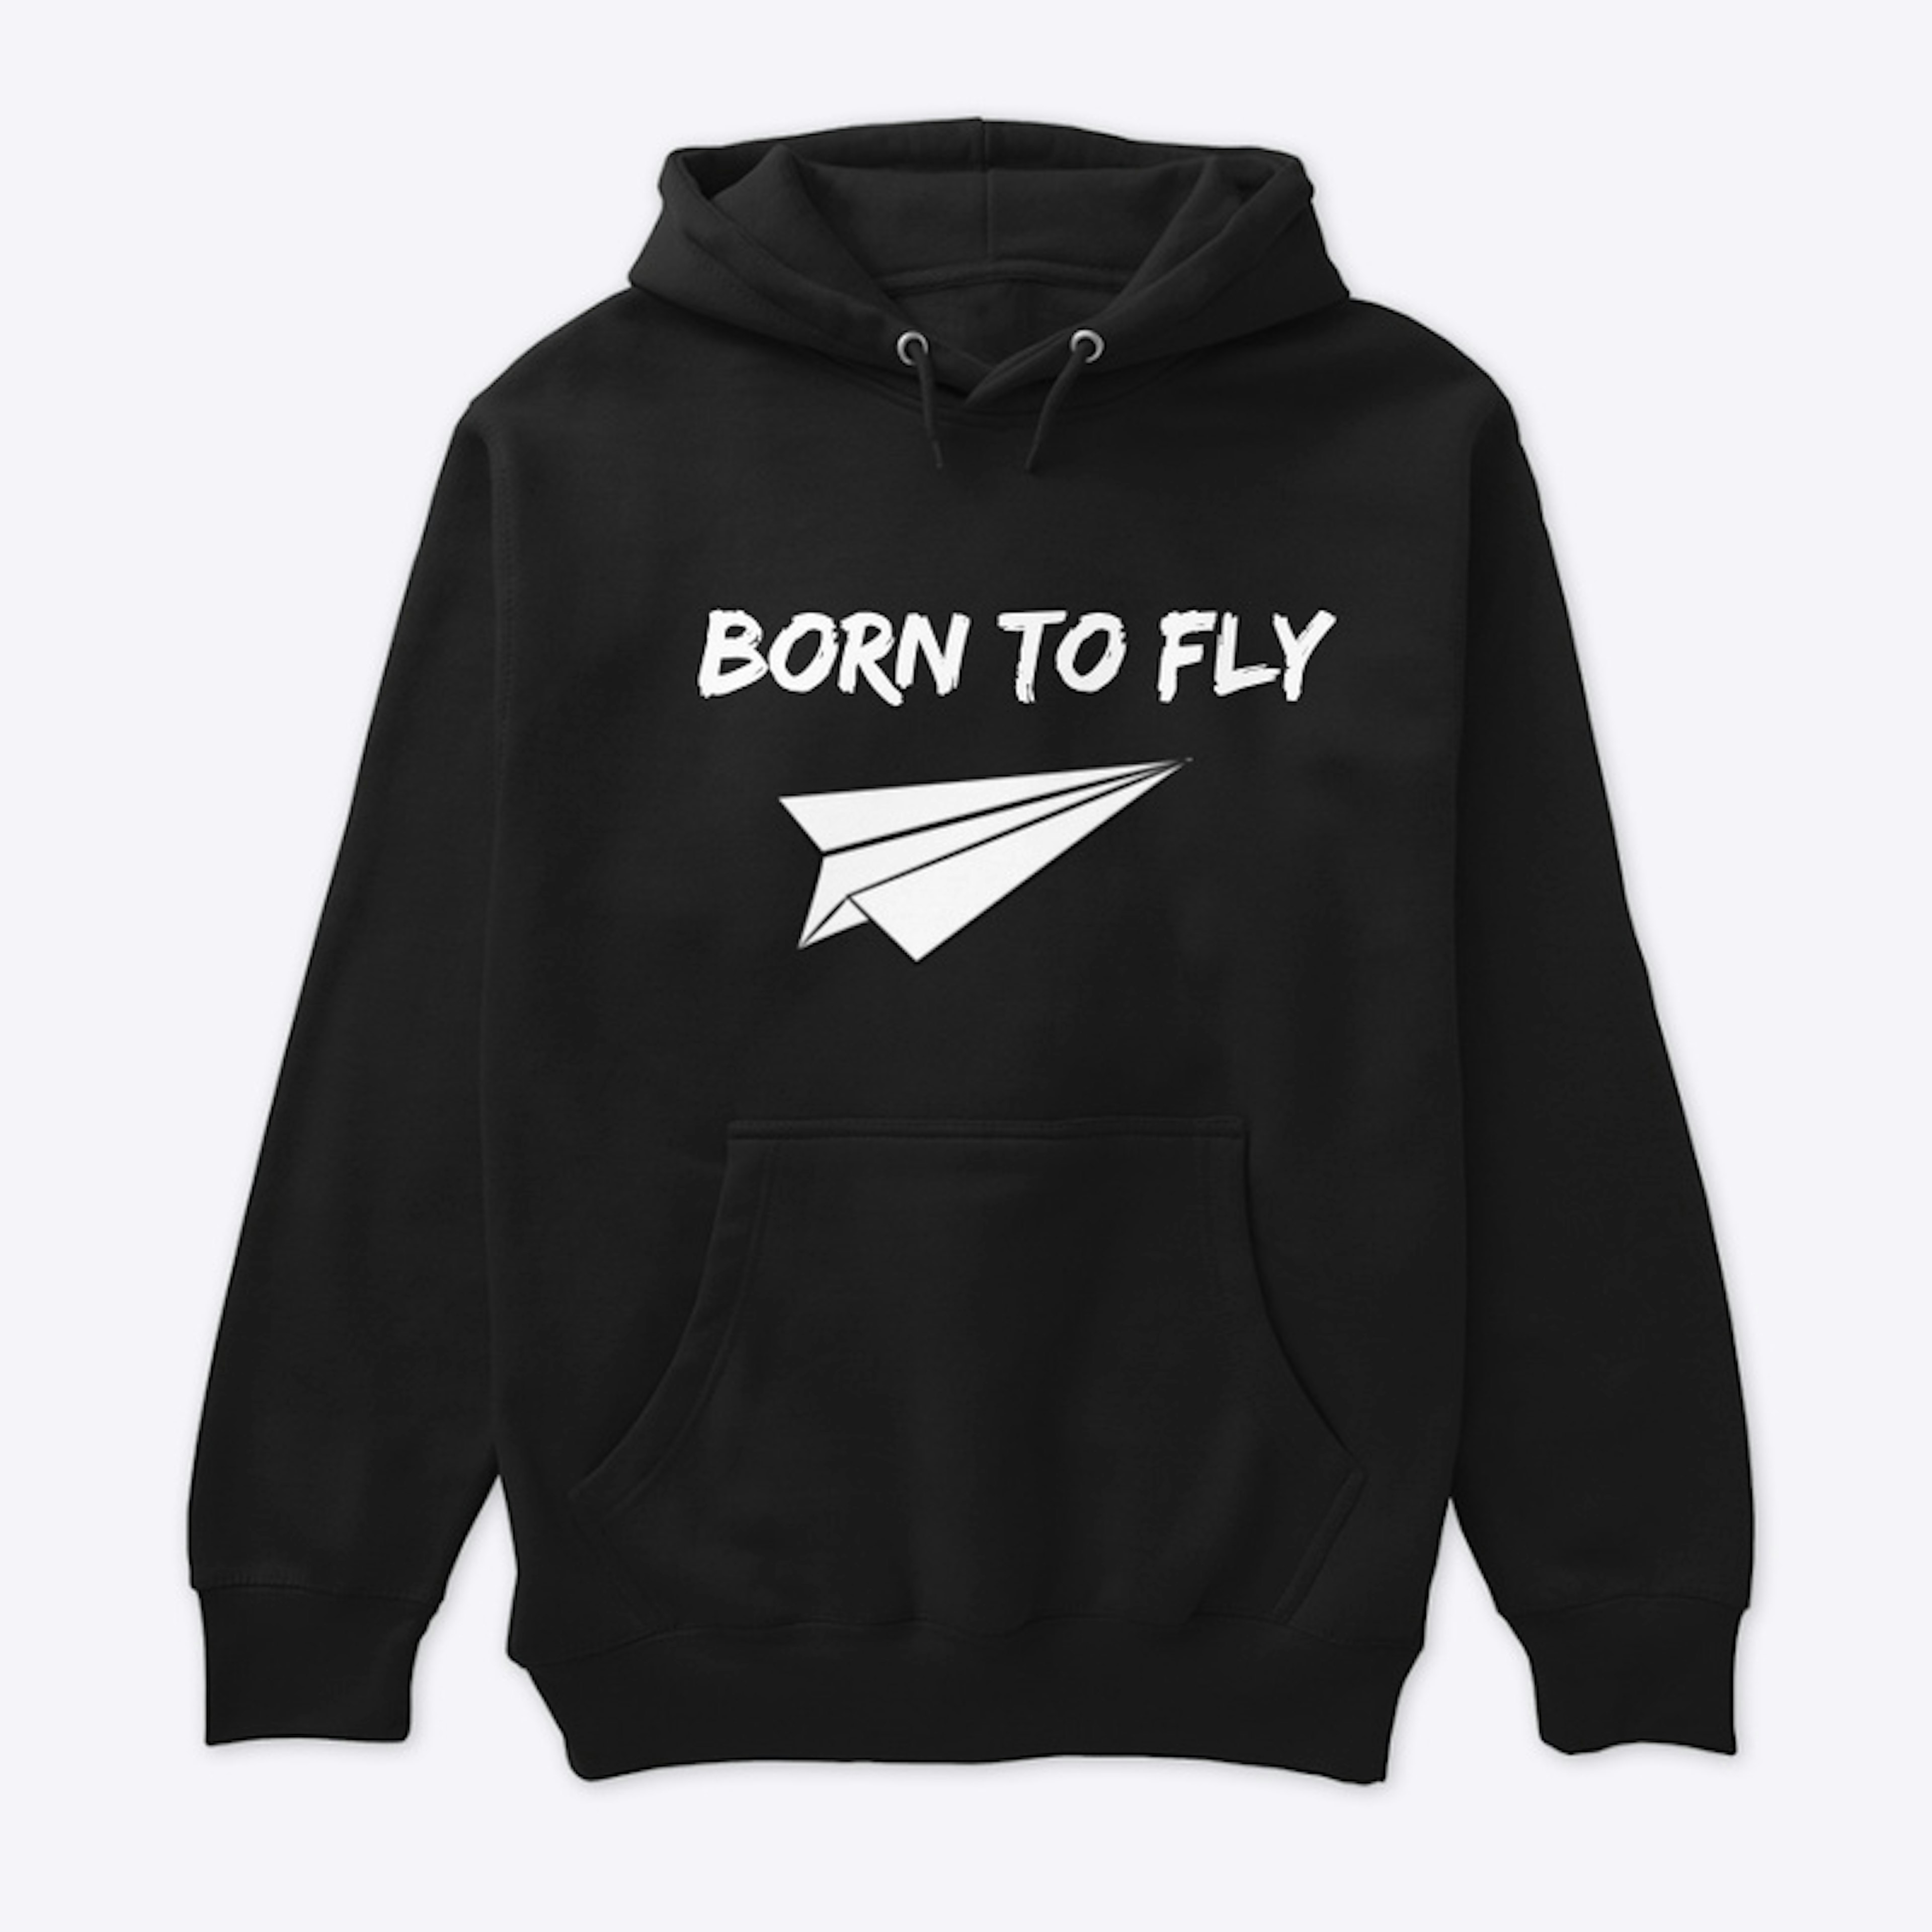 Born To Fly Hoody